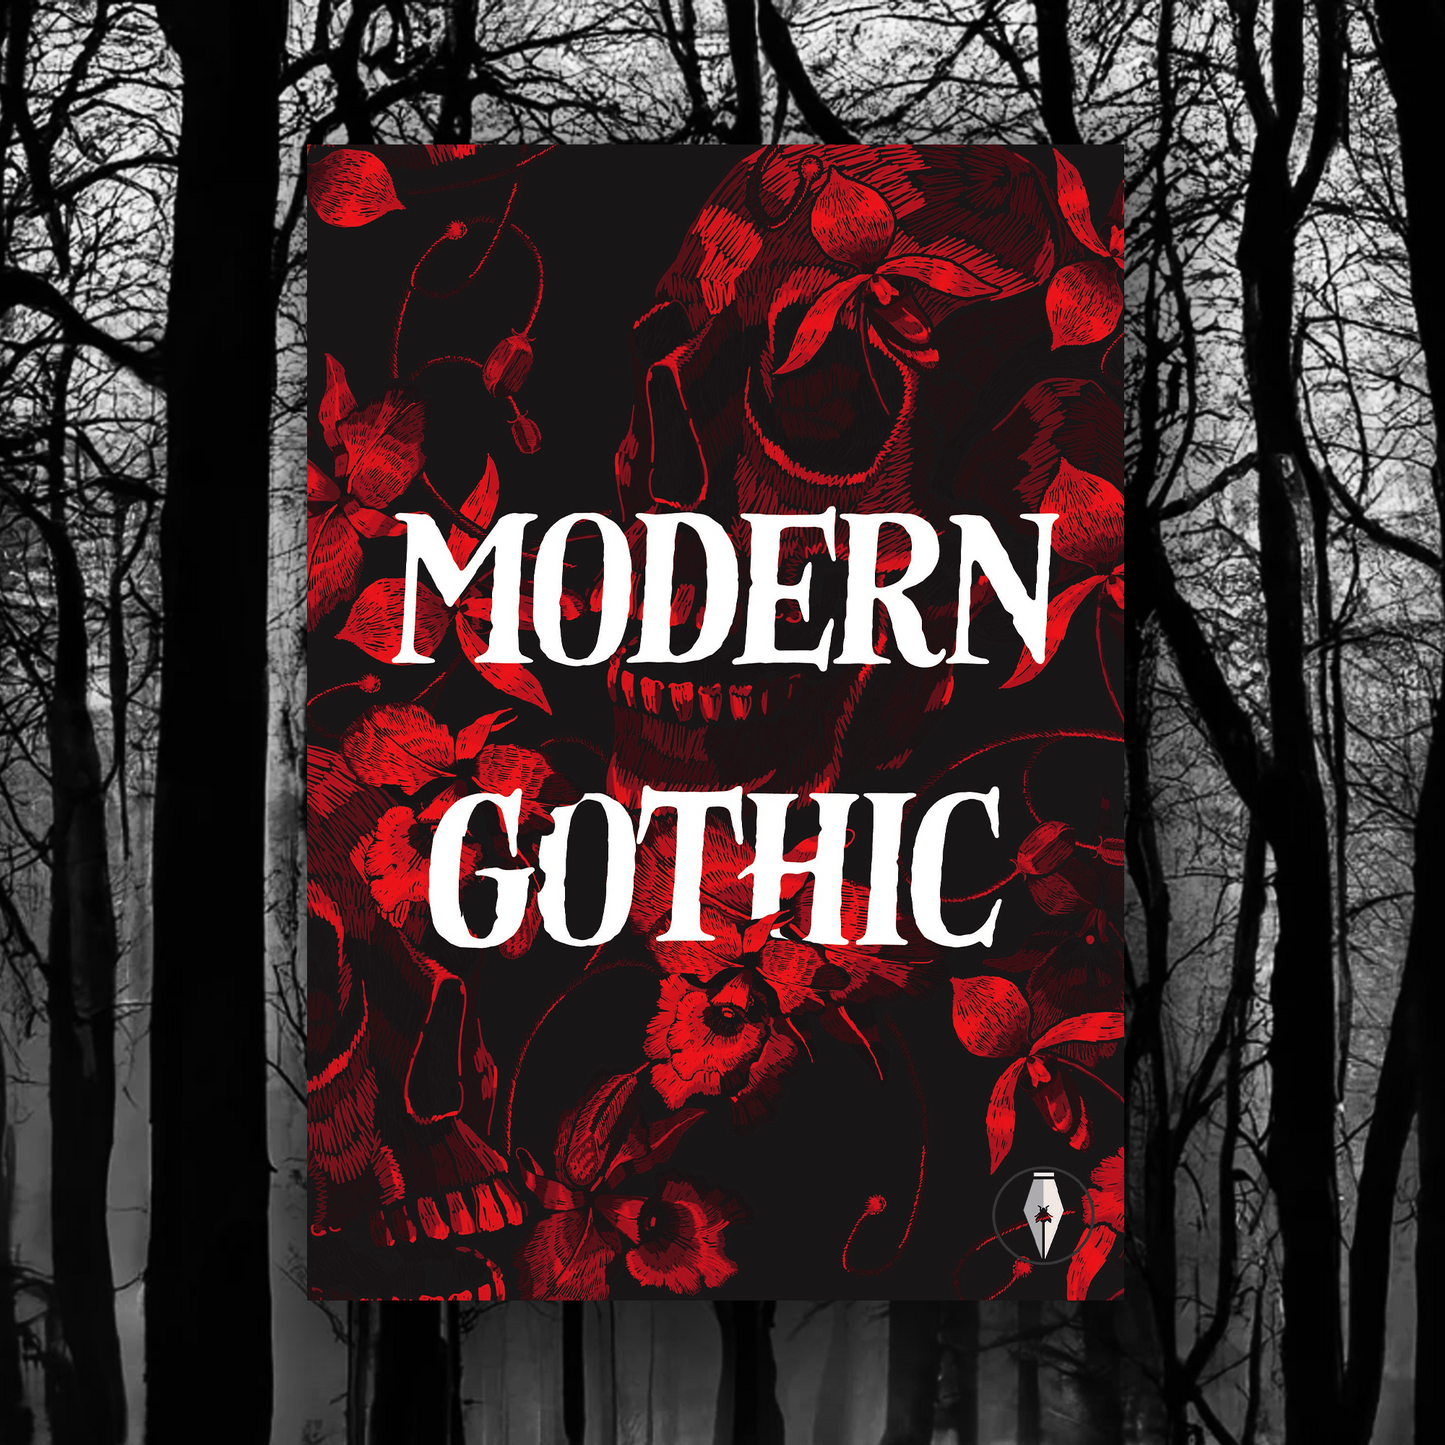 Modern Gothic launch with Lauren Archer & Alyssa Lloyd